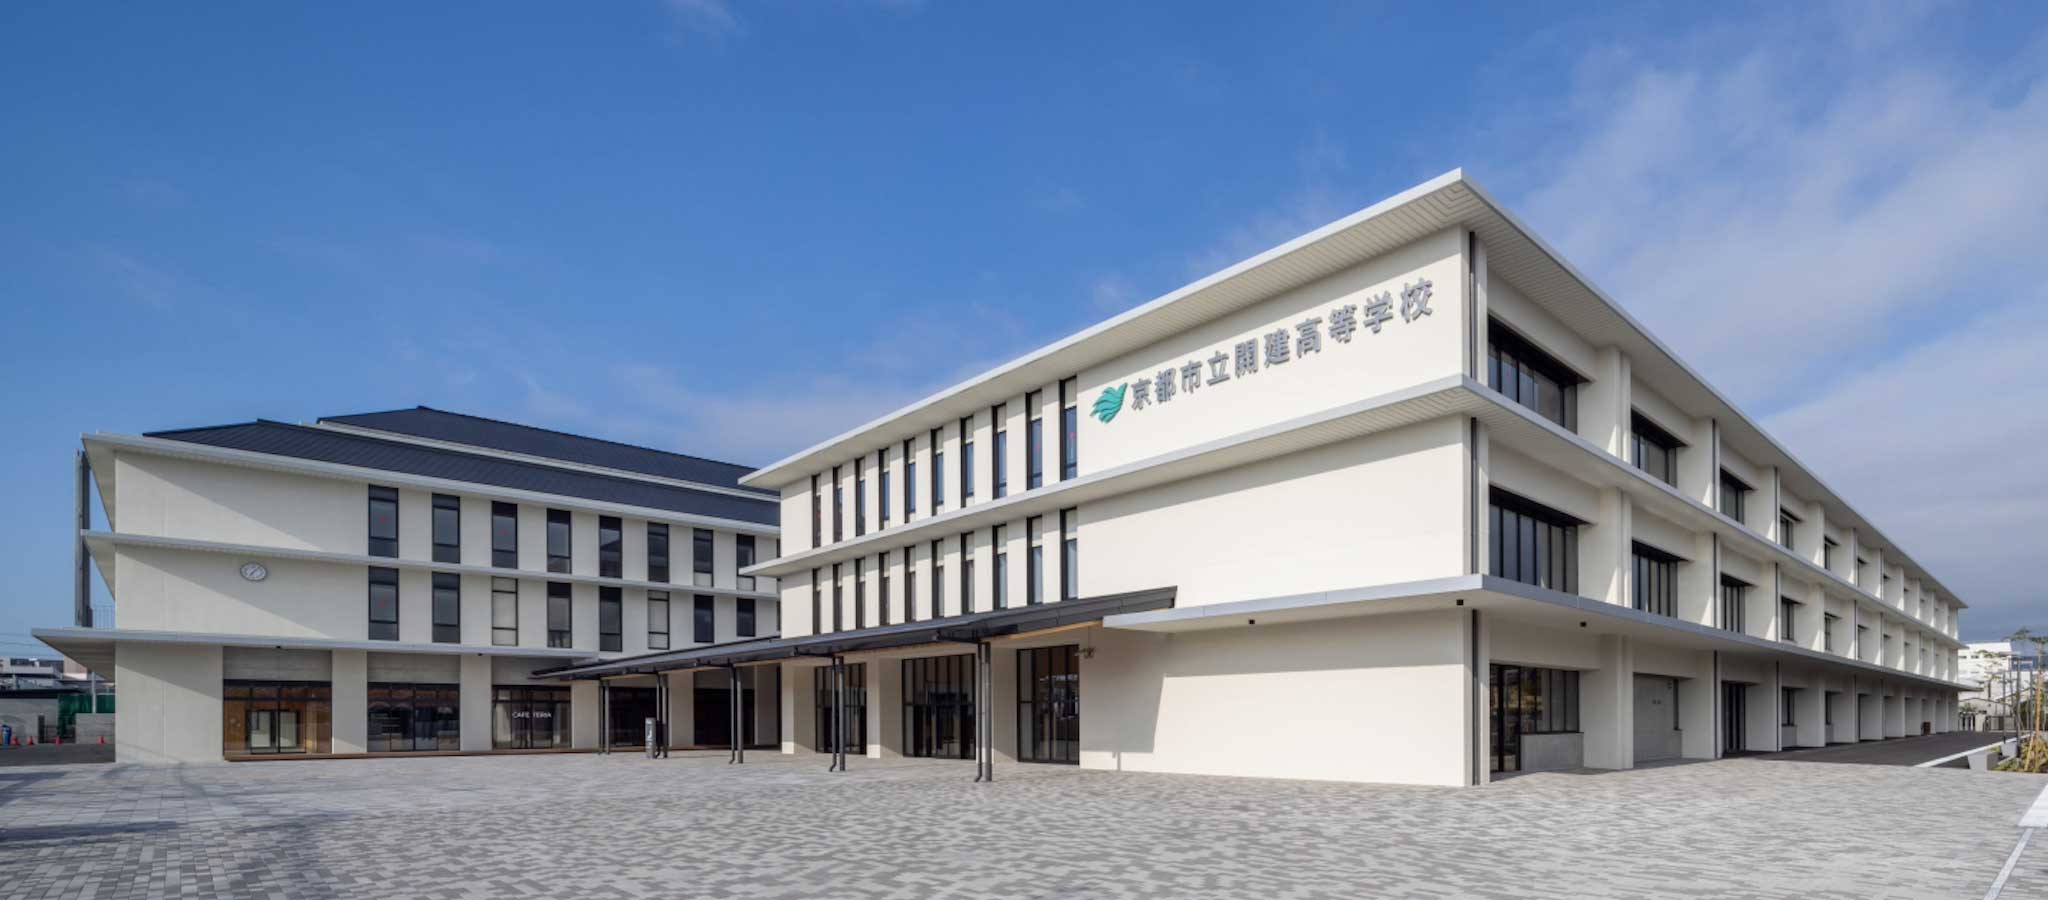 ボーク重子｢京都市立開建高校｣の教育改革を取材